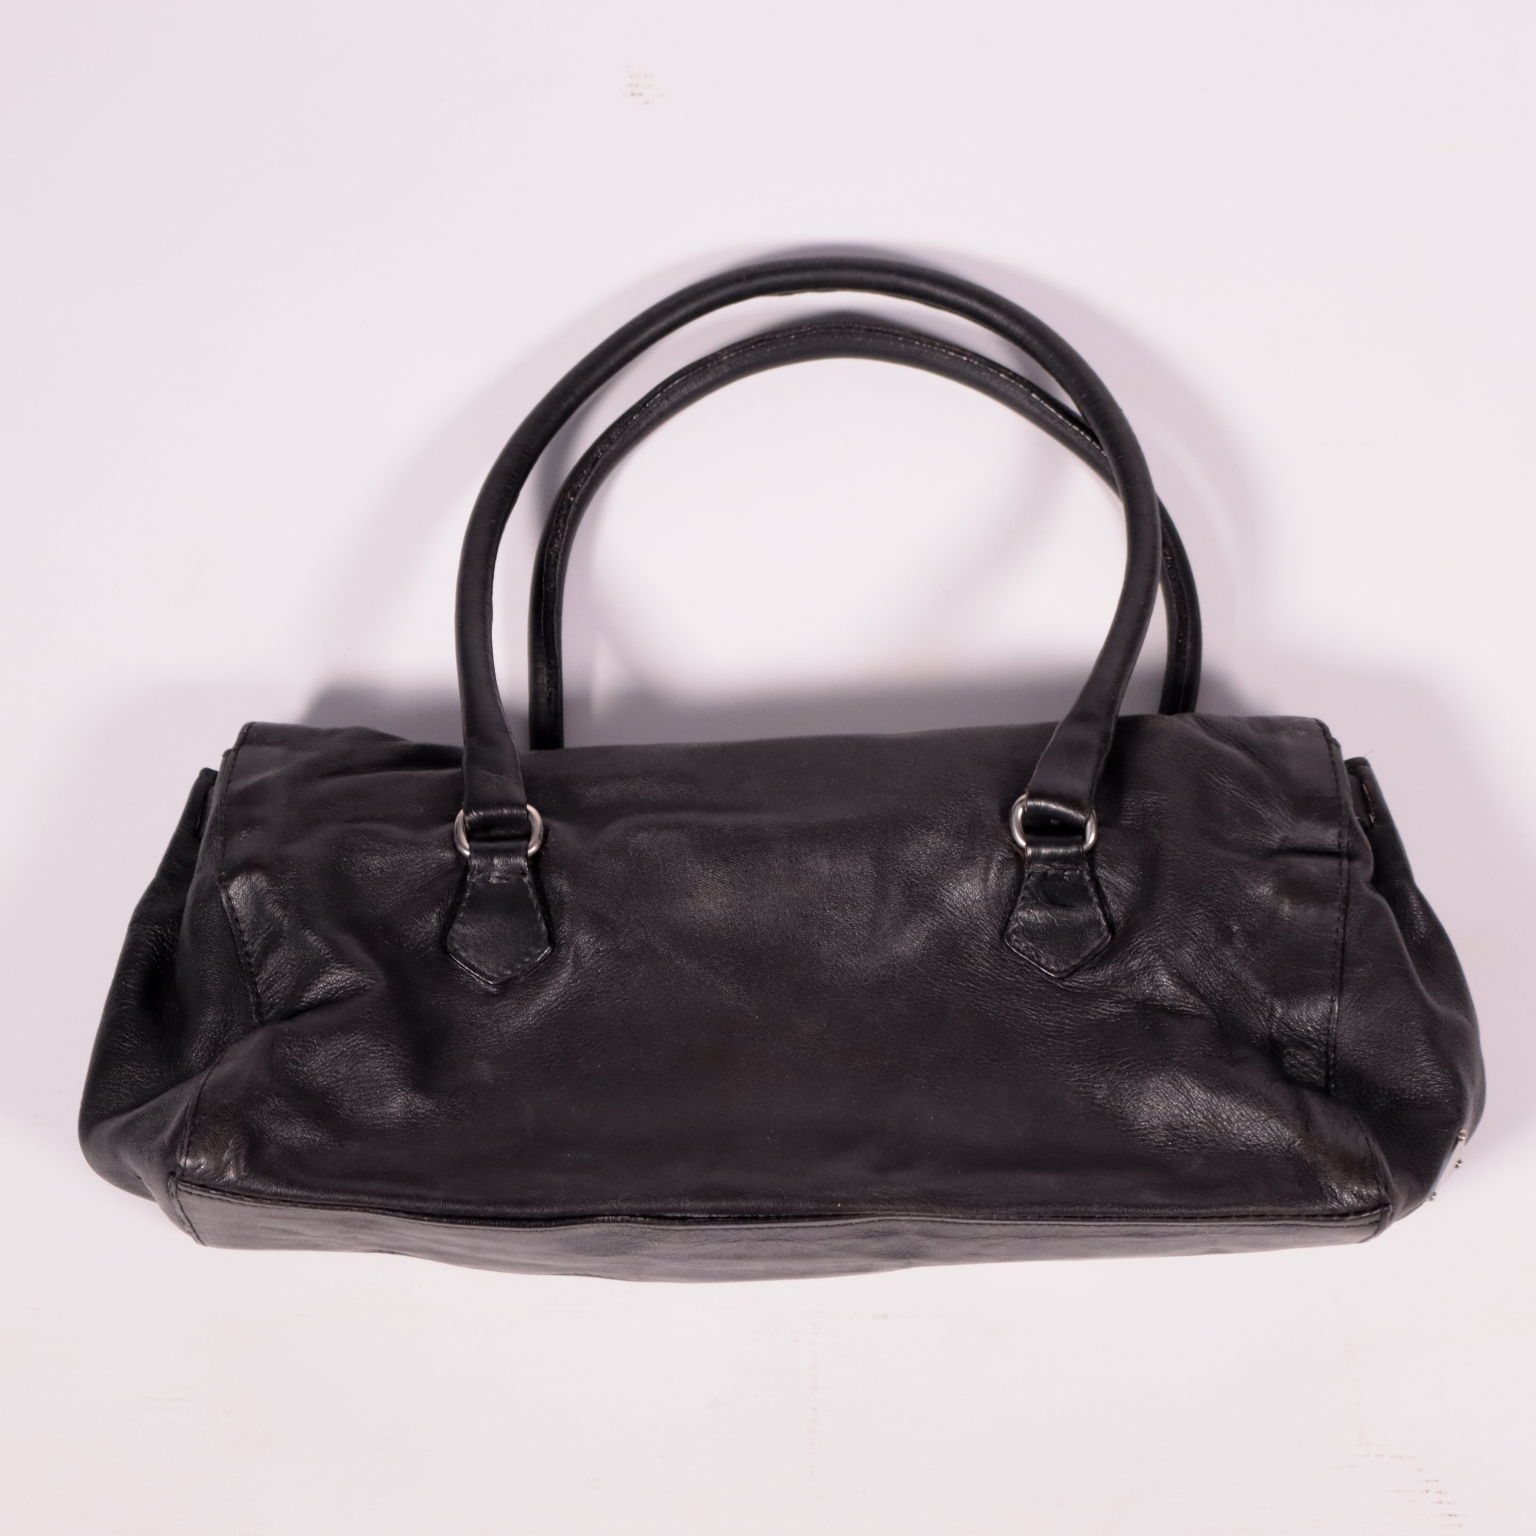 Vintage Prada Black Leather Bag, Clothing, Vintage, dimanoinmano. It